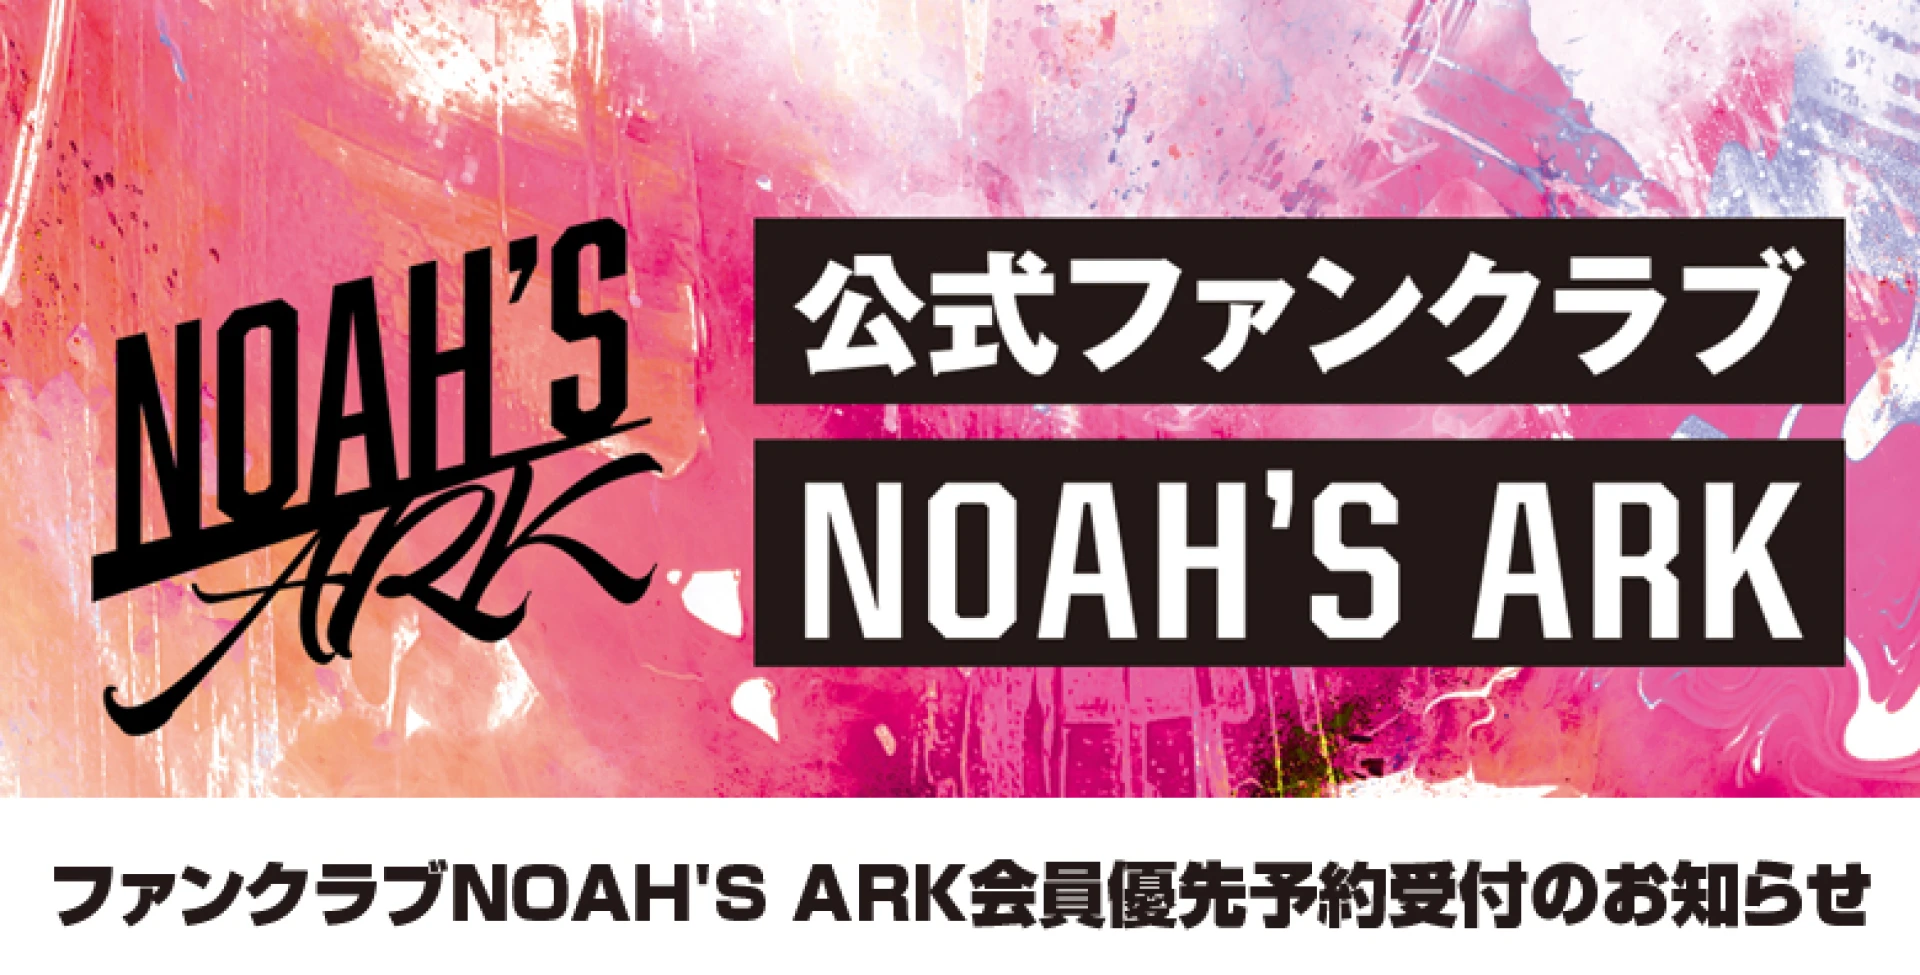 【12/20 12時より】オフィシャルファンクラブNOAH'S ARK会員優先予約受付のお知らせ